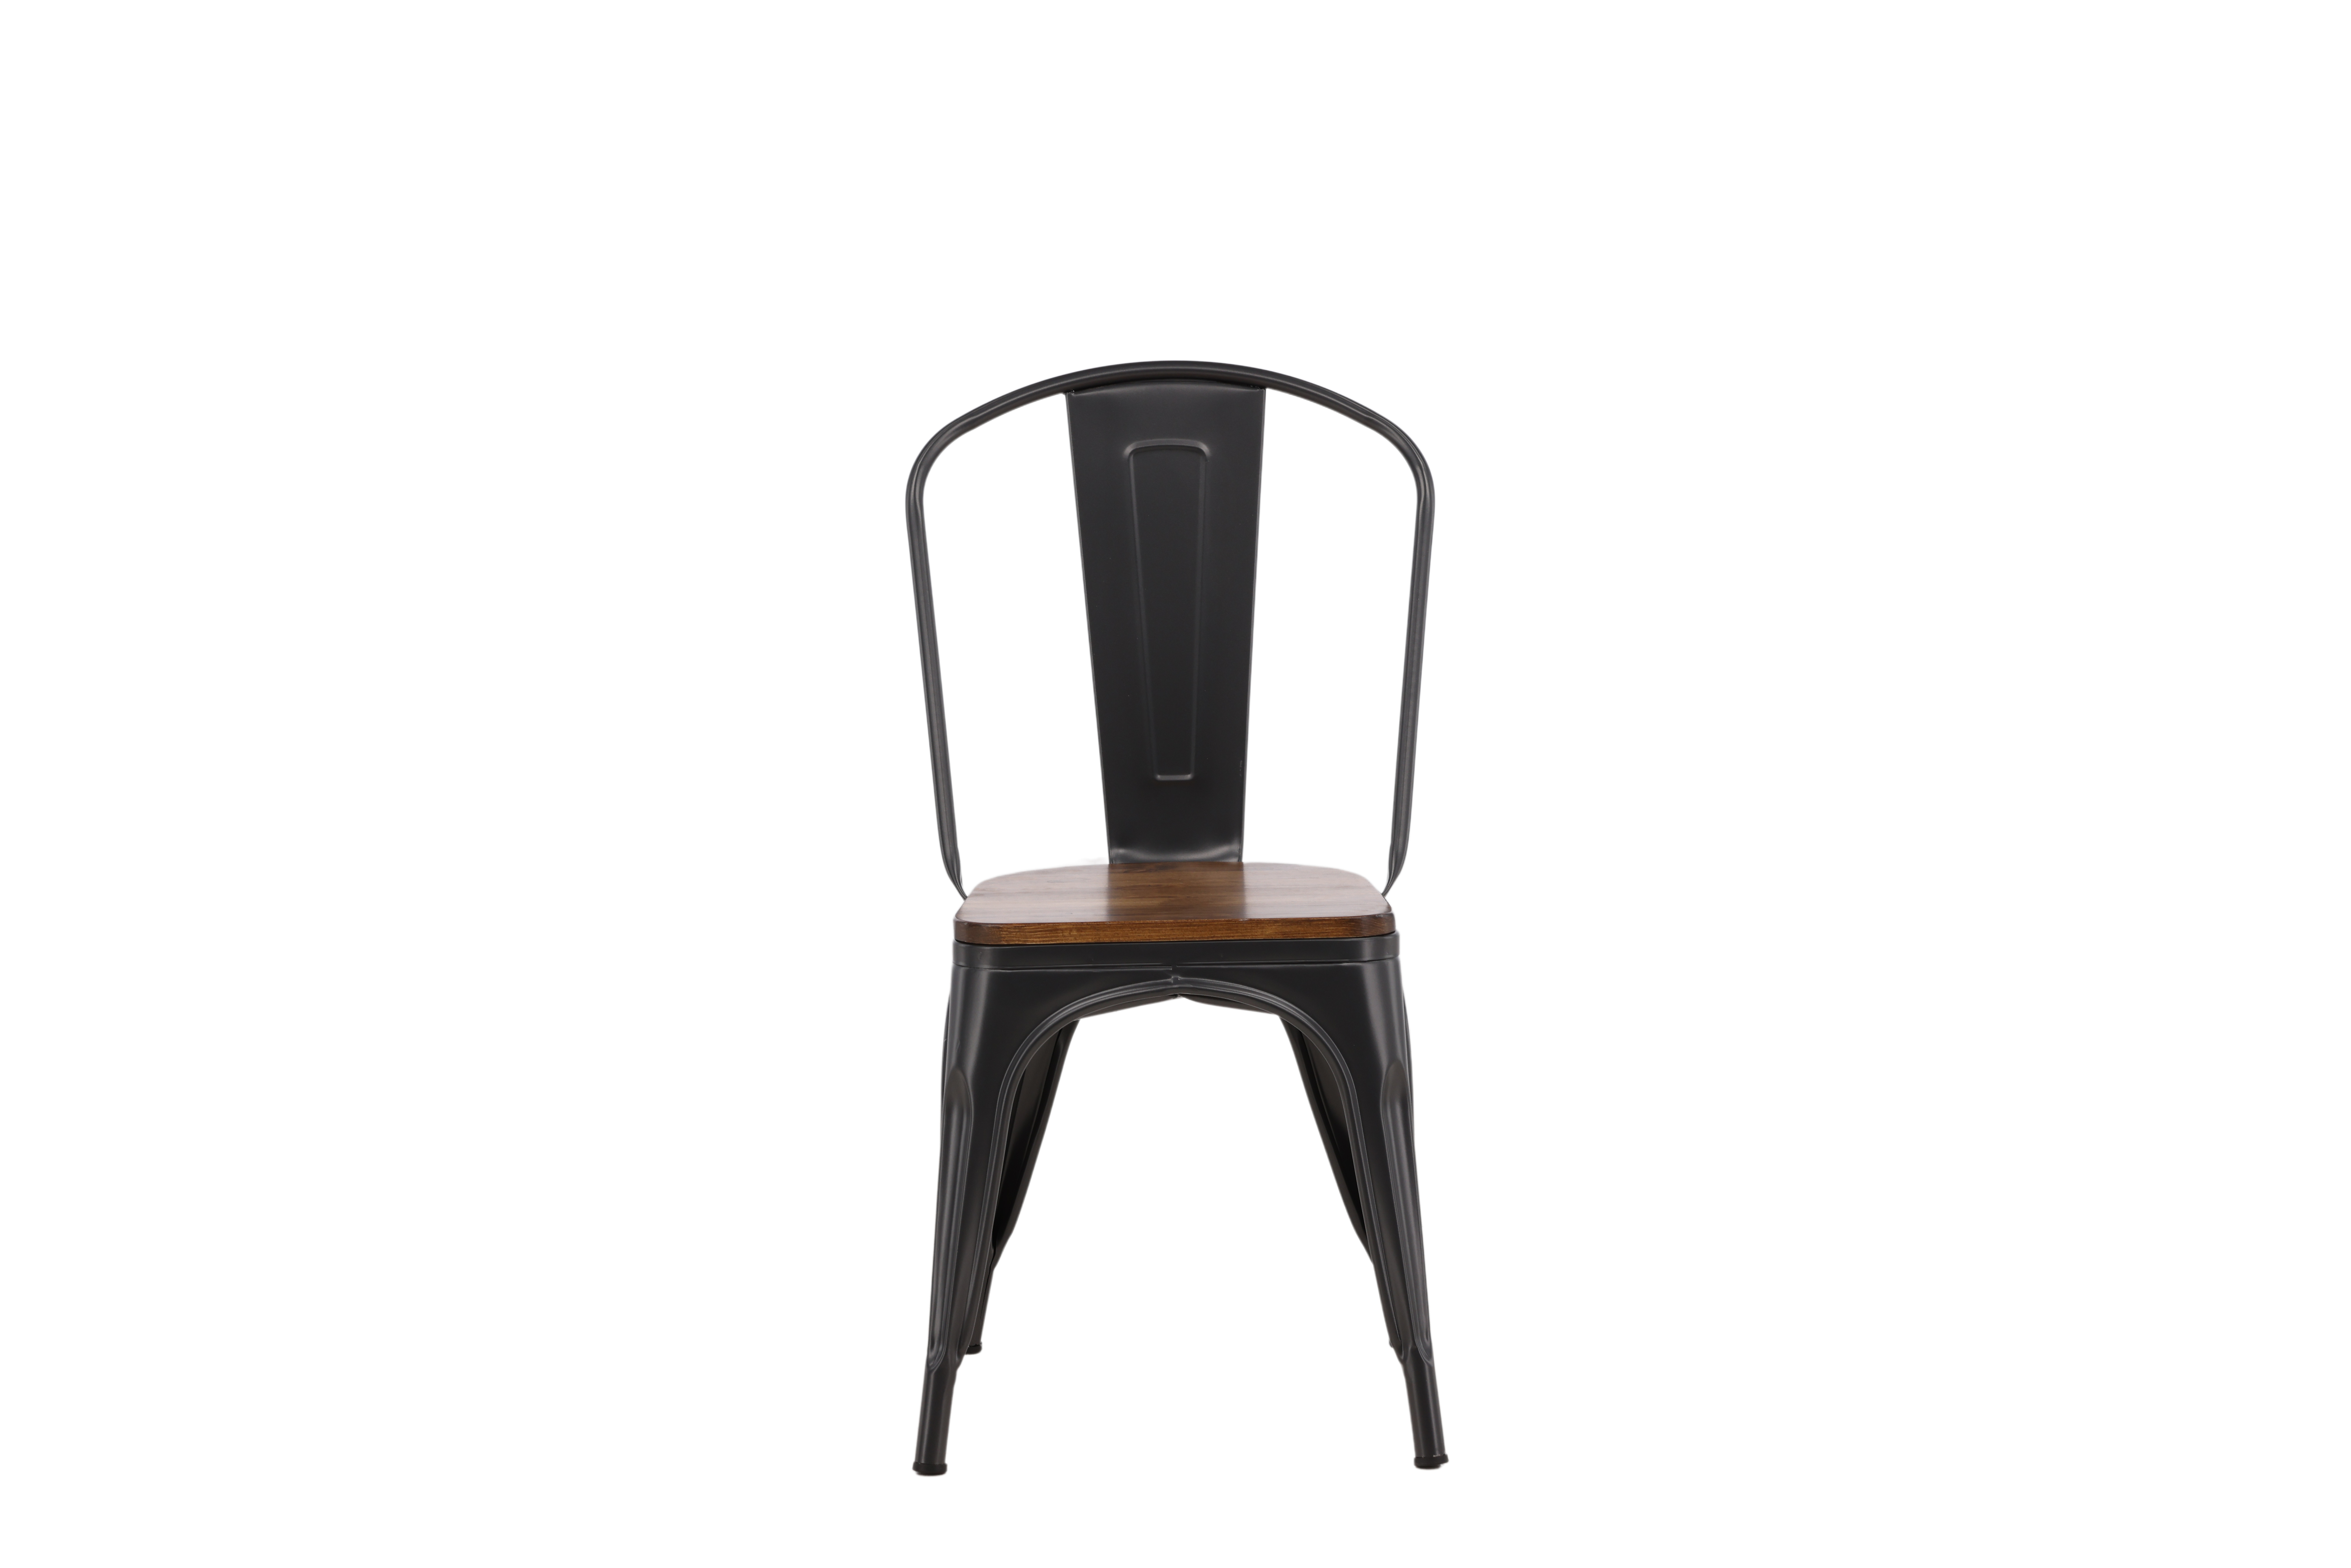 VENTURE DESIGN Tempe spisebordsstol - mørkebrun MDF og mørkegrå stål